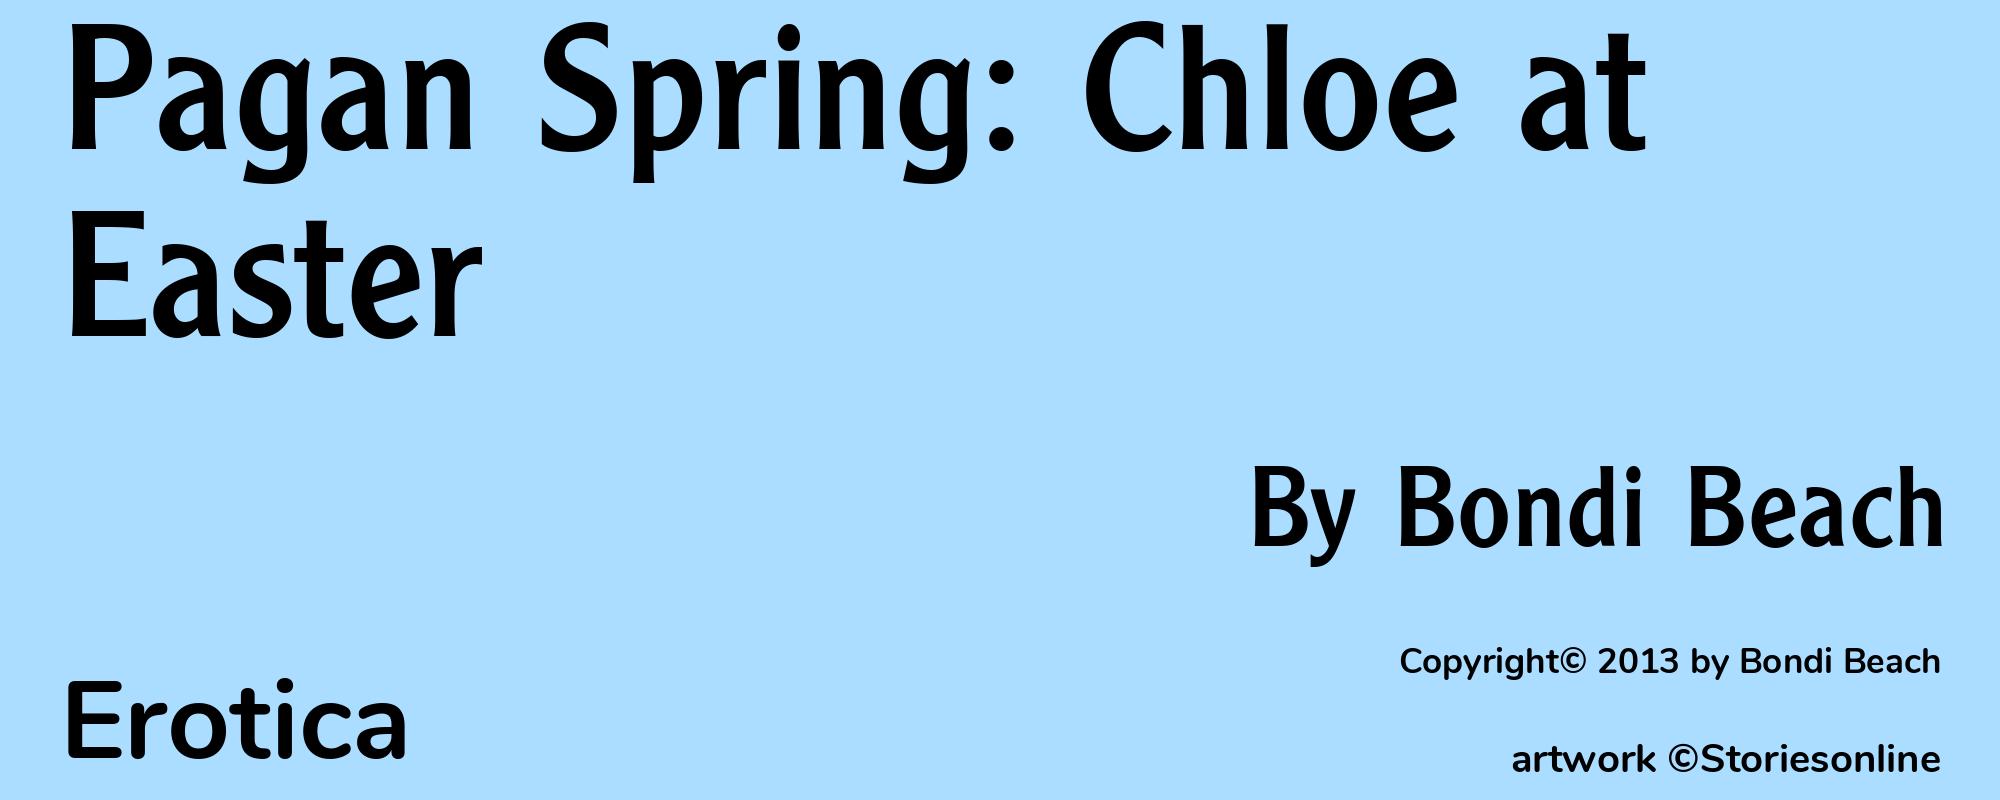 Pagan Spring: Chloe at Easter - Cover